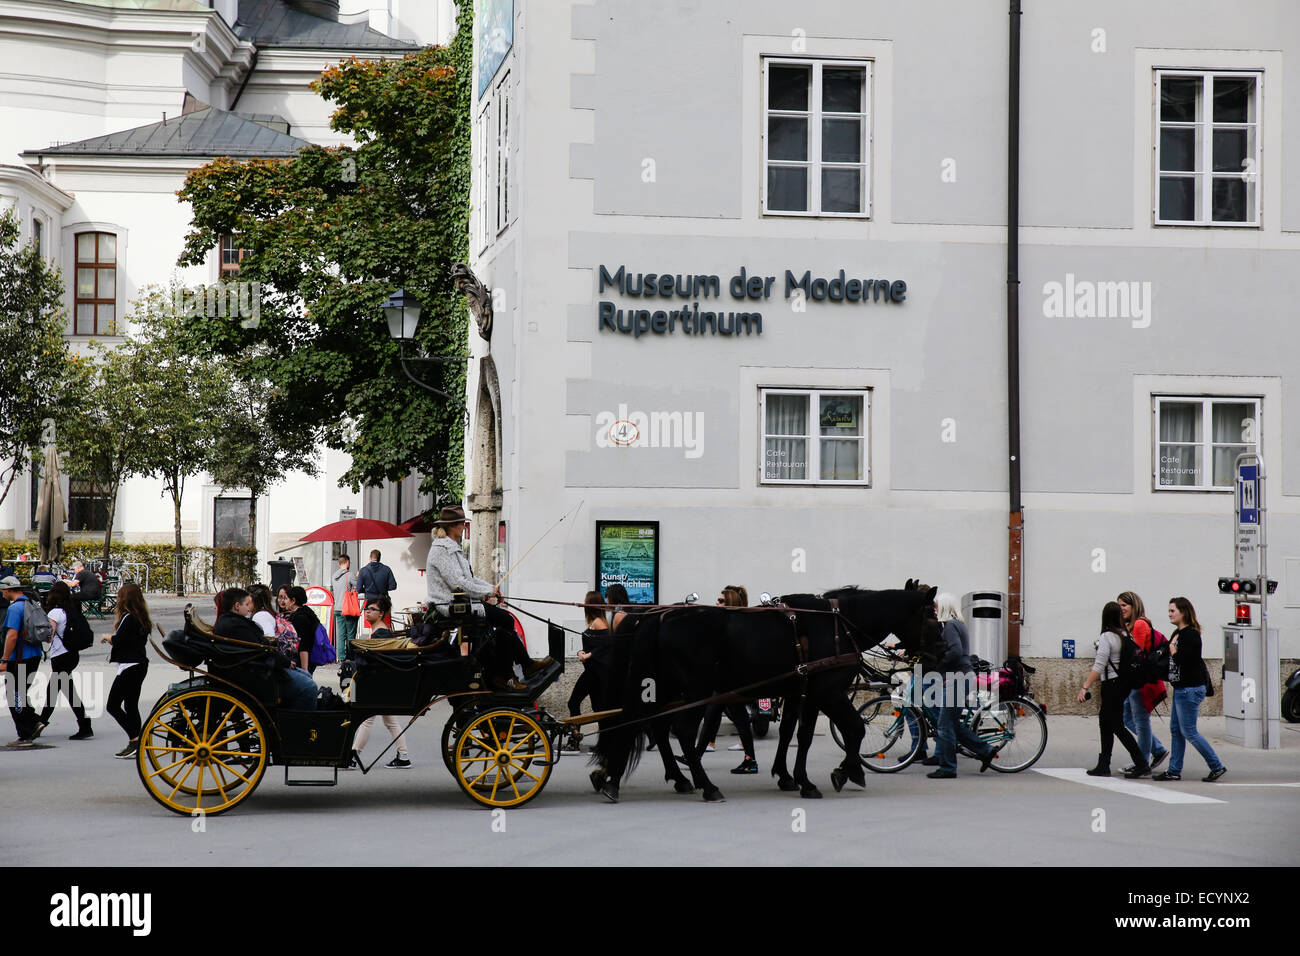 Salzburg Museum der Moderne Rupertinum Stock Photo